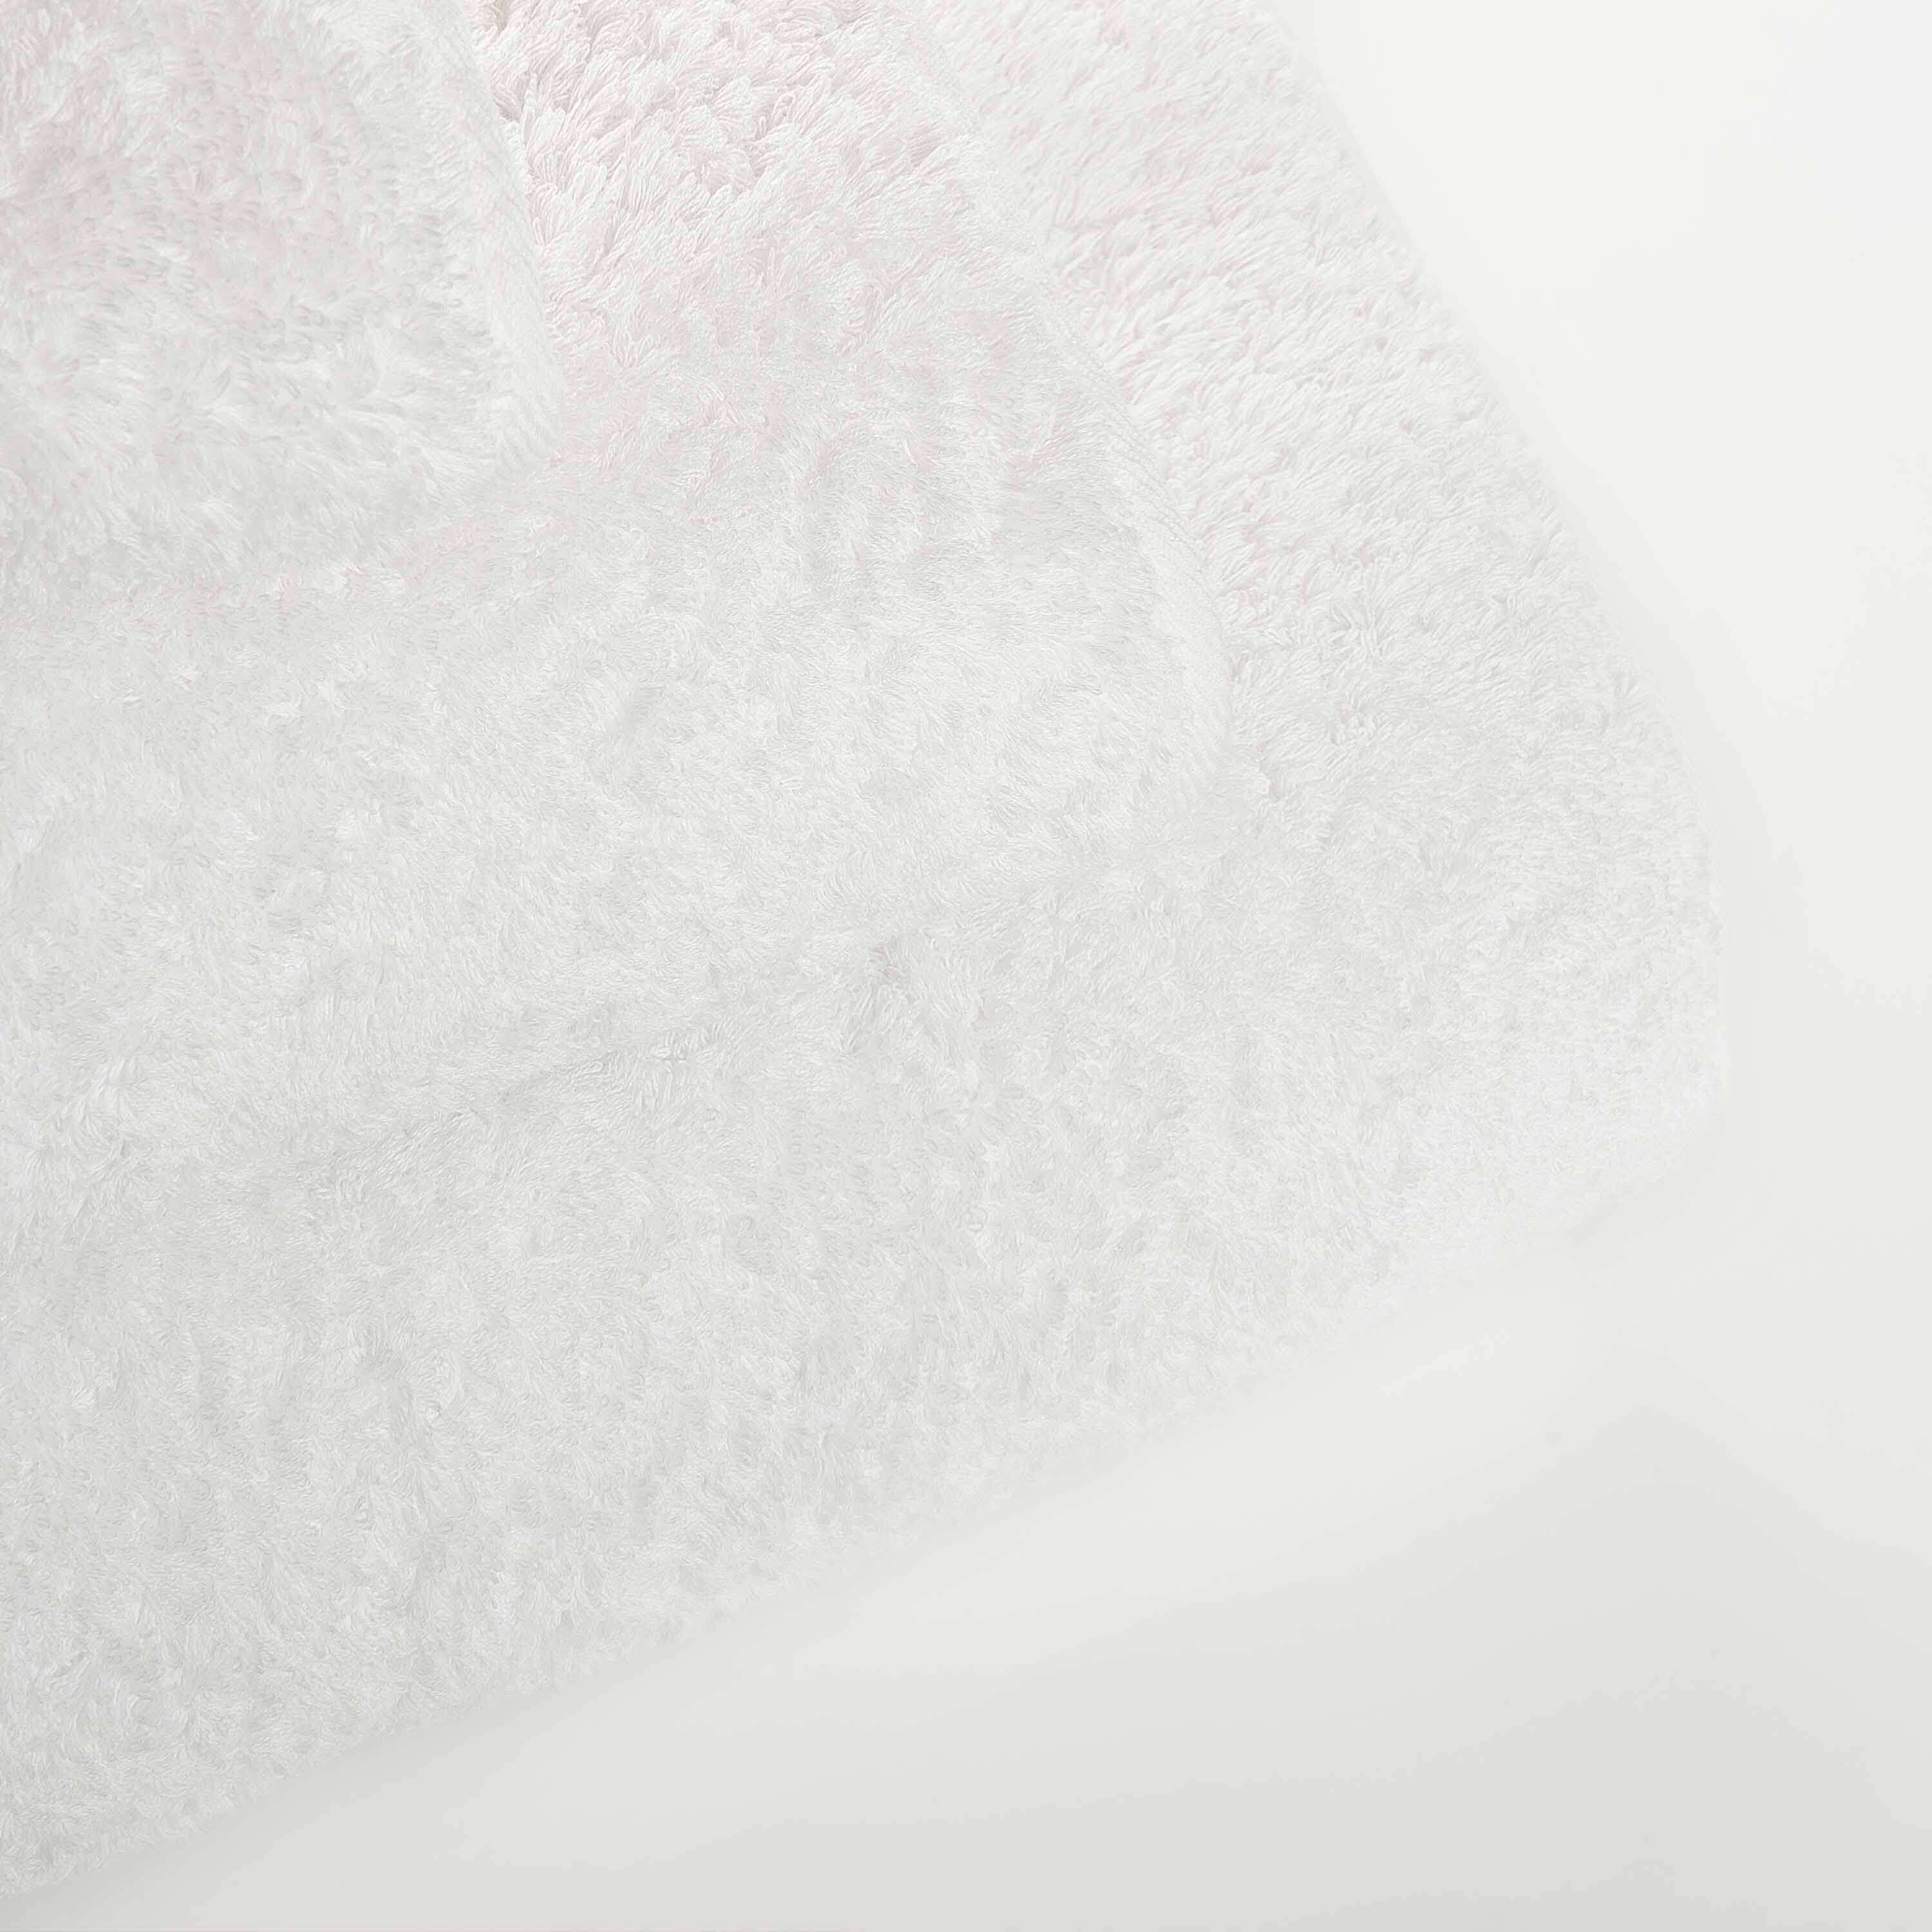 Элитное полотенце Egoist Range White ☞ Размер: 50 x 100 см